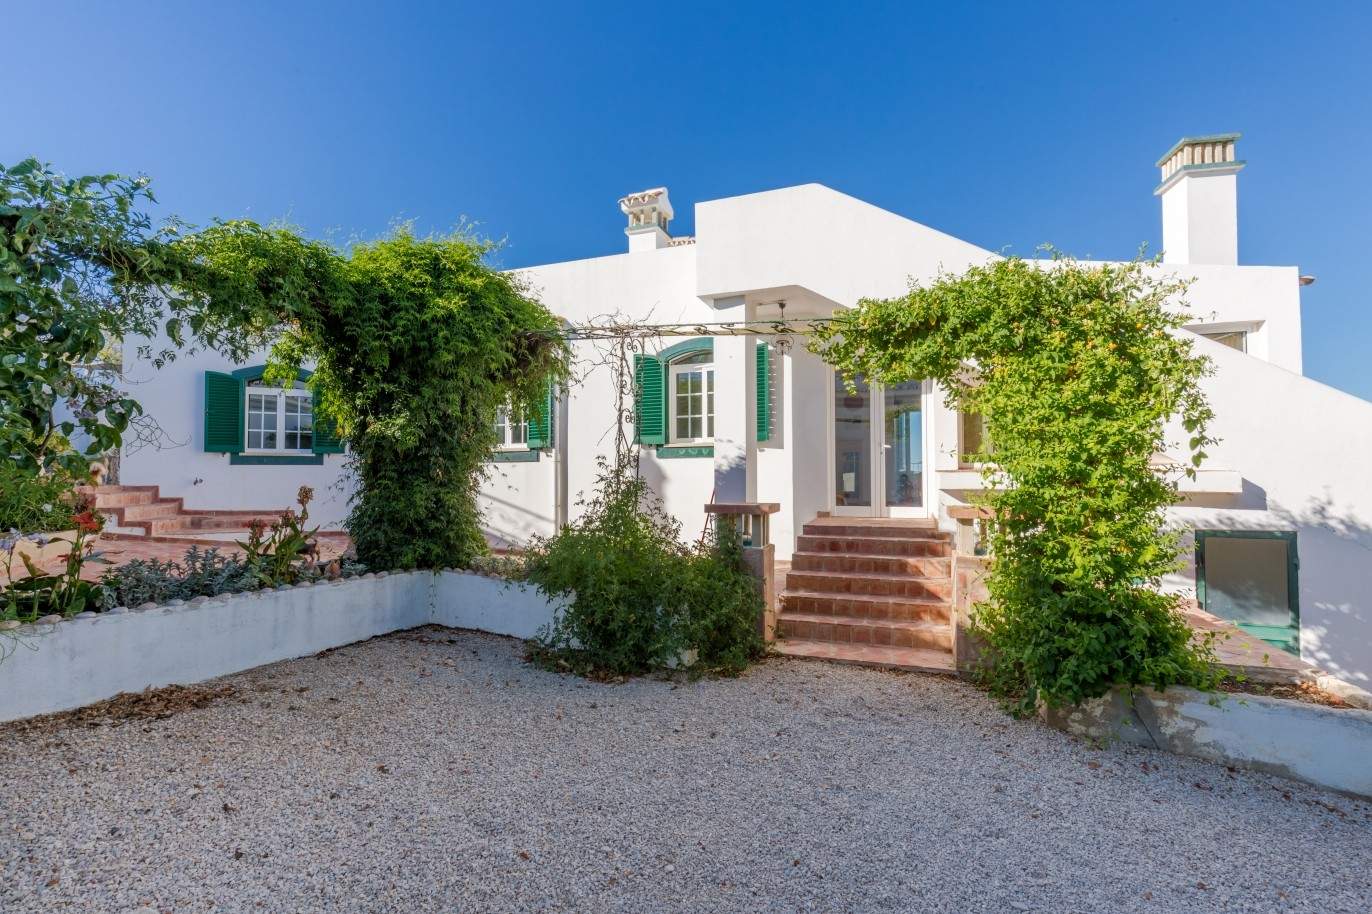 Detached villa for sale, country views, Loulé, Algarve, Portugal_67632